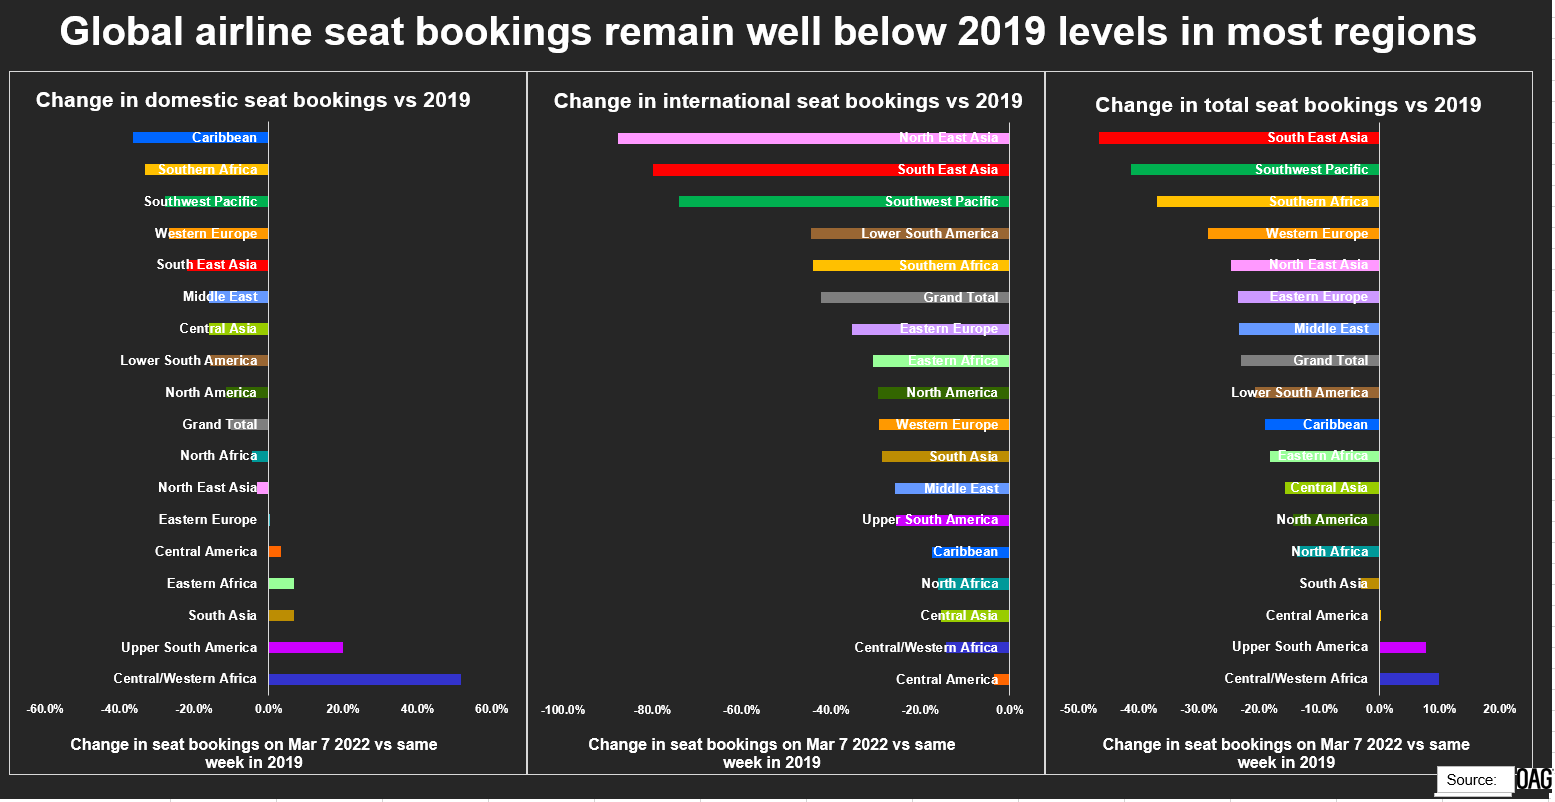 Die weltweiten Sitzplatzbuchungen von Fluggesellschaften bleiben in den meisten Regionen deutlich unter dem Niveau von 2019